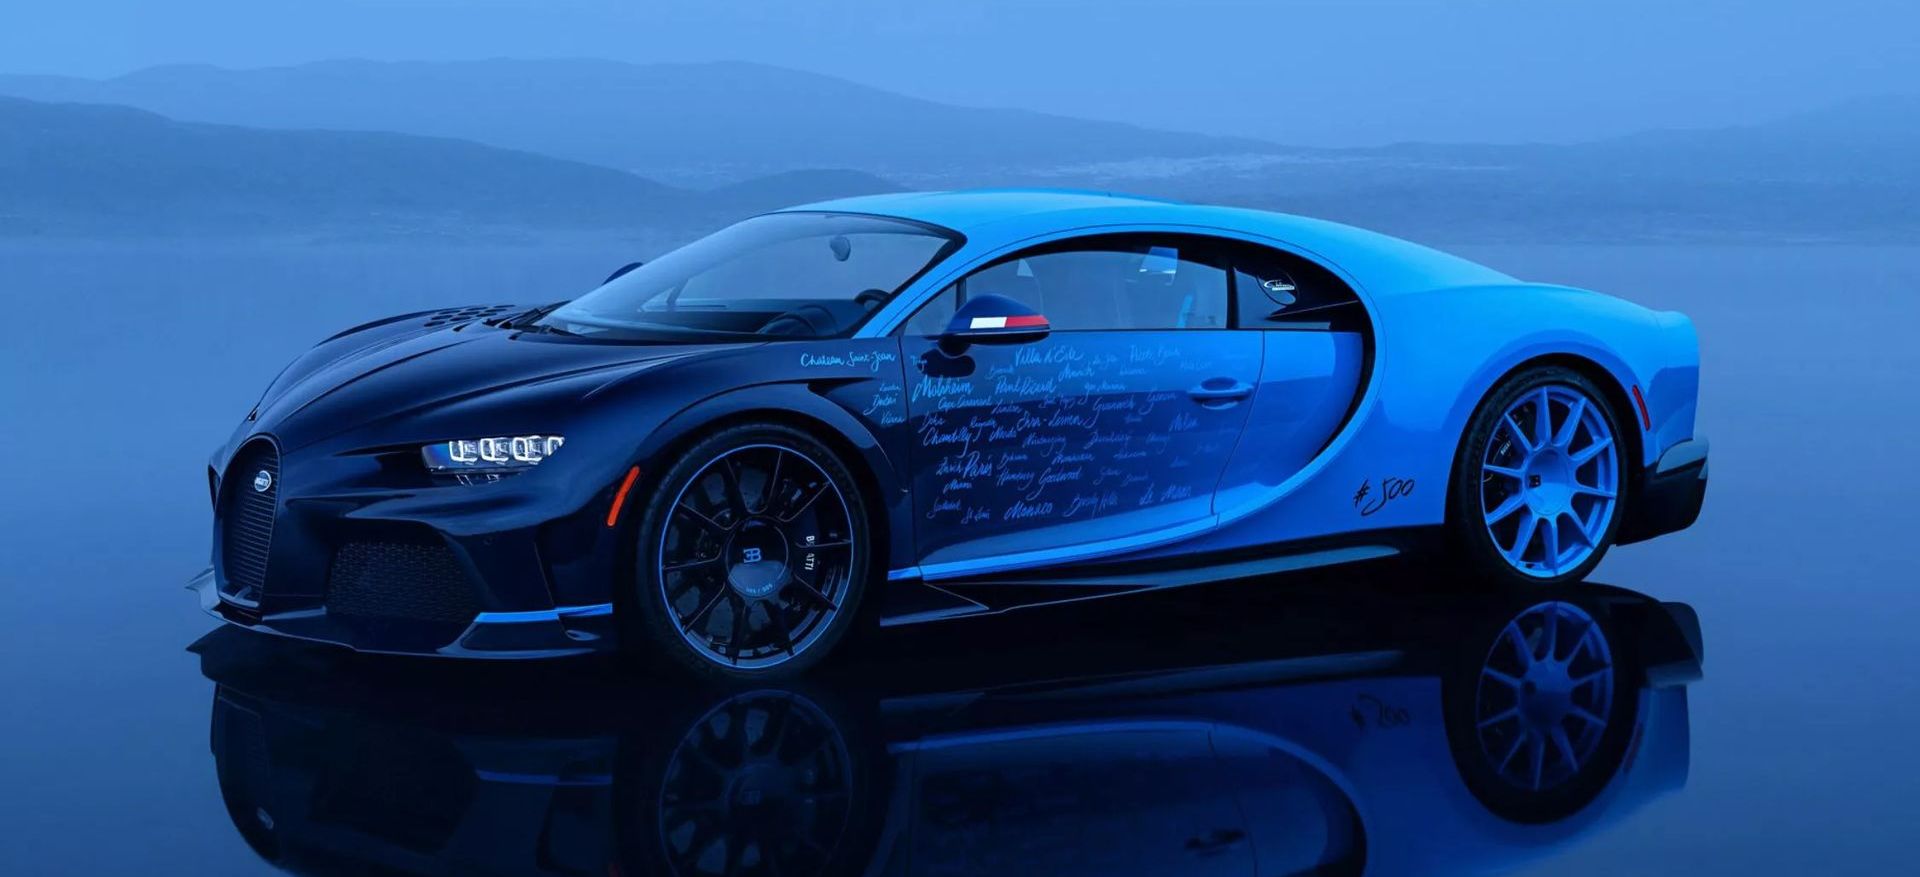 Este Chiron llamado L'Ultime marca el punto y final de una era en Bugatti